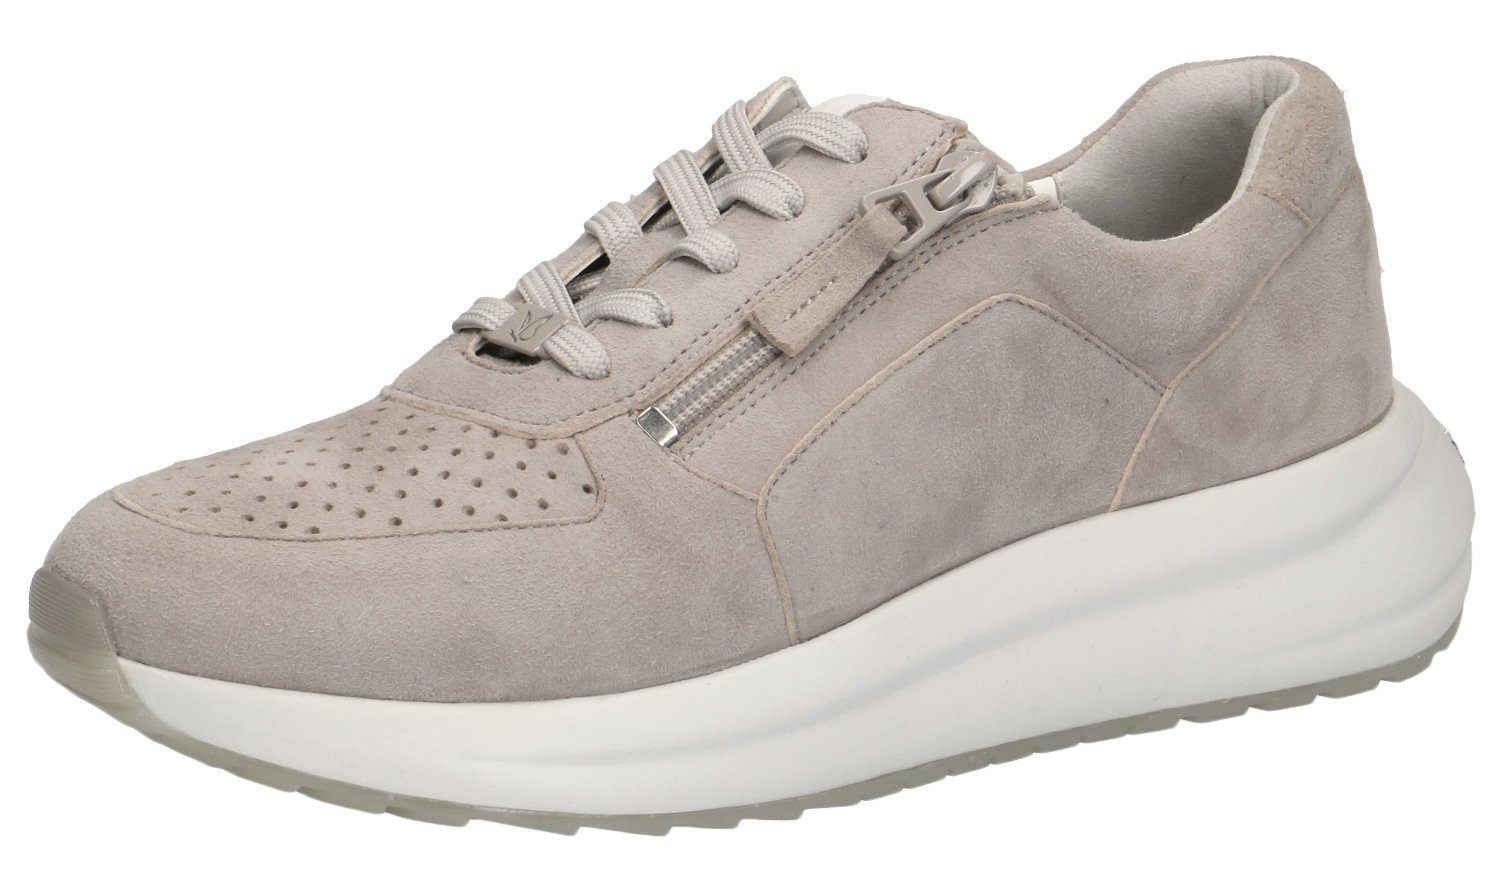 238 Suede 9-23714-28 Caprice Grey Sneaker